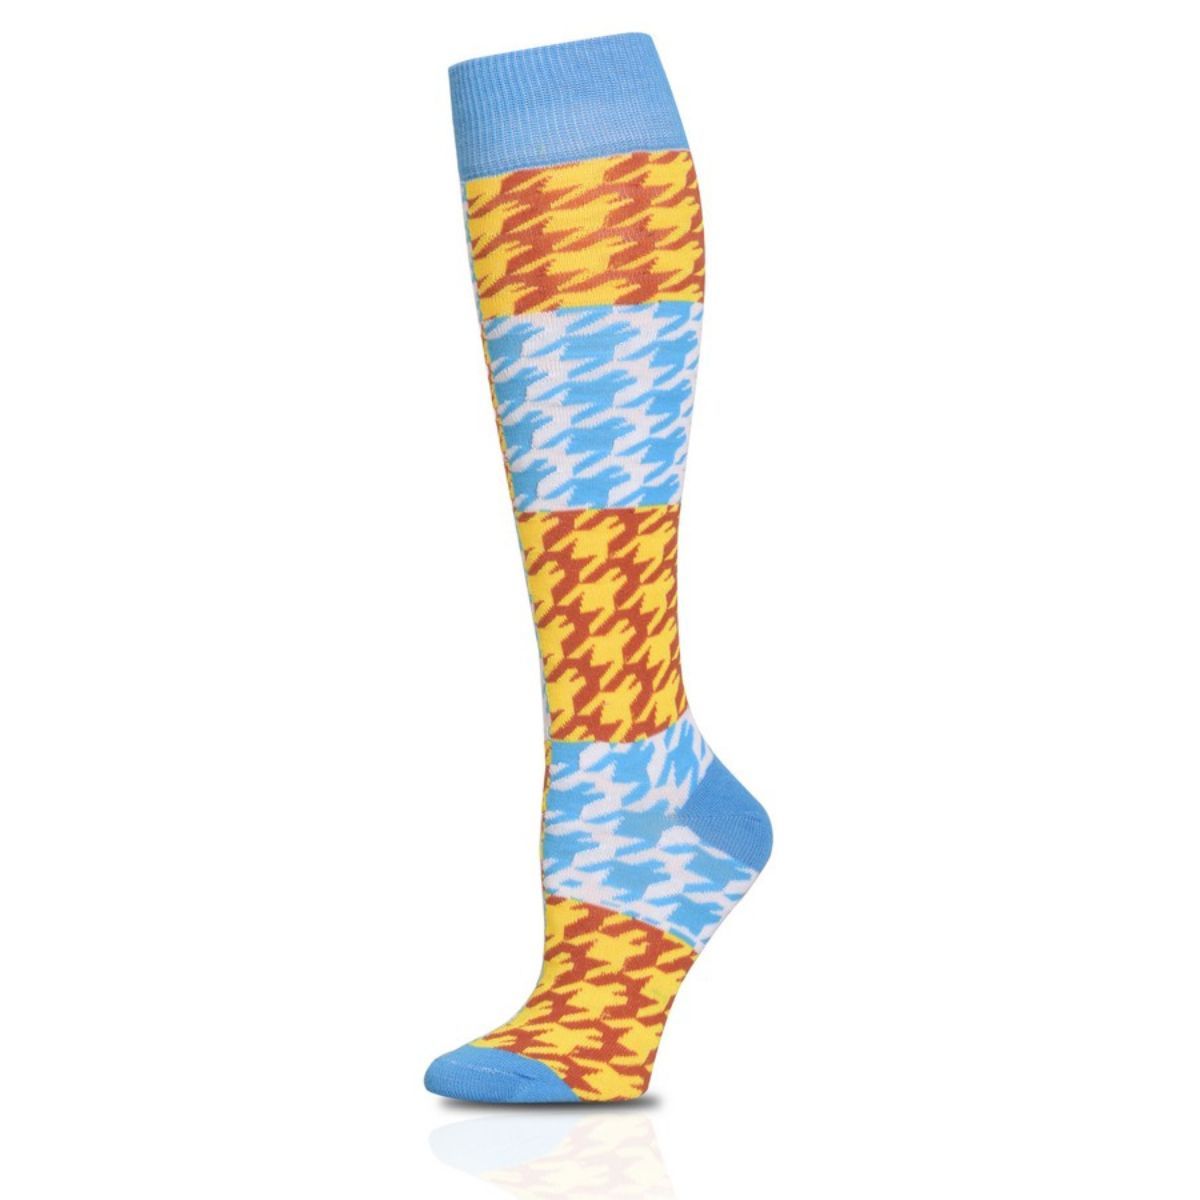 Socks Knee High Blue Checkered for Women